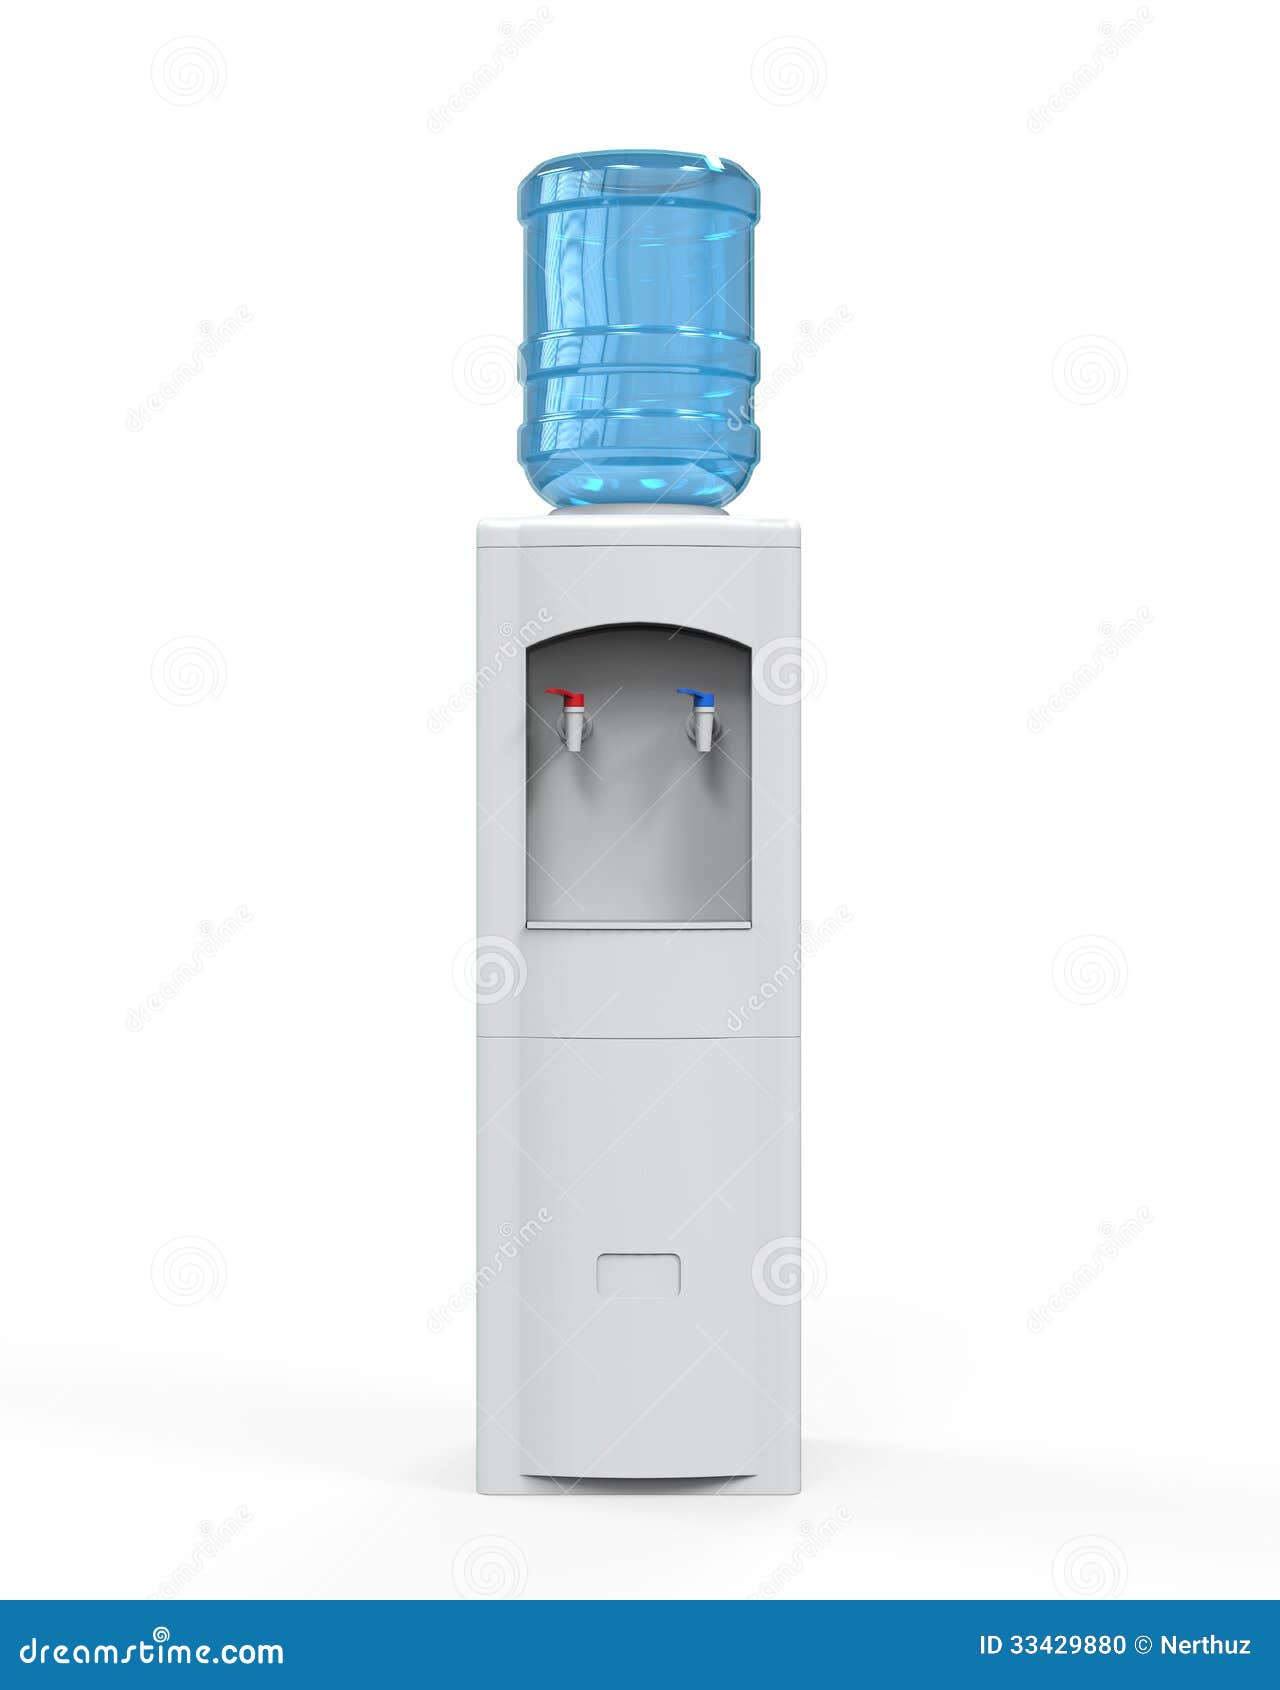 Water cooler dispenser